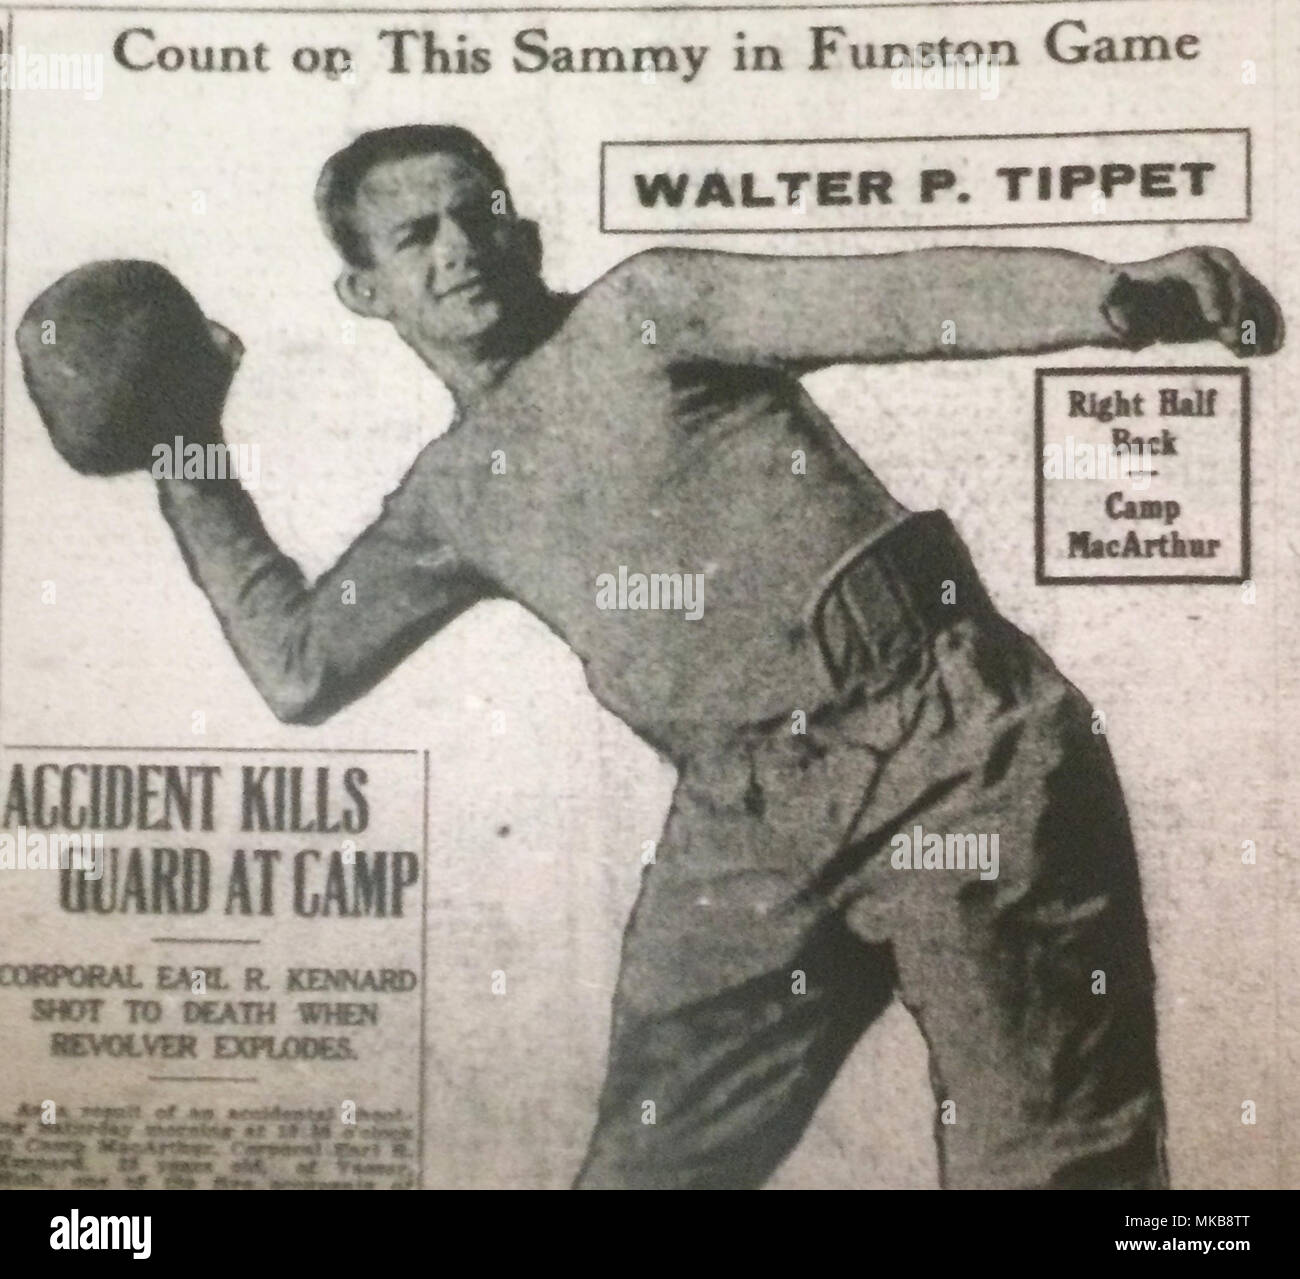 Walter Tippet von Stevens Point, Wis., war ein Stern Läufer in Appleton's Lawrence College und war einer der besten Spieler auf's Camp MacArthur 32nd Division Football Team, bestehend aus Männern von der Wisconsin und Michigan National Guard. Bild von Dez. 4, 1917 Camp MacArthur Bugle Stockfoto